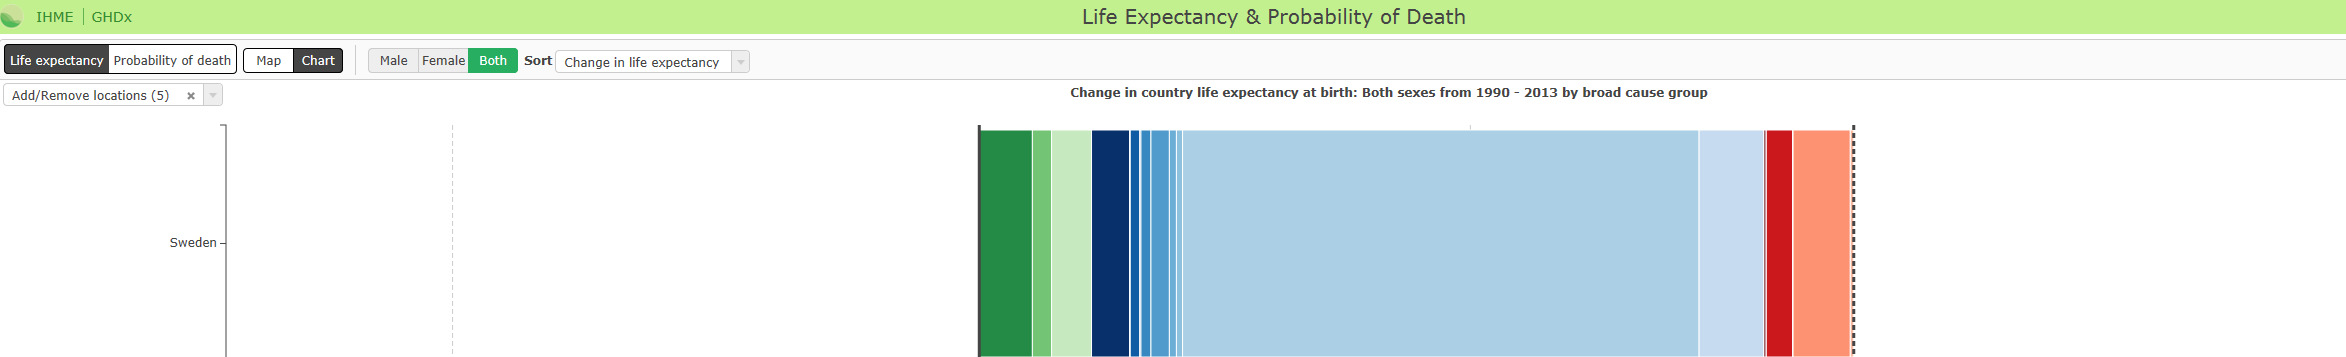 Forventet levealder i land med vedvarende perioder med verdens høyest kjente levealder,